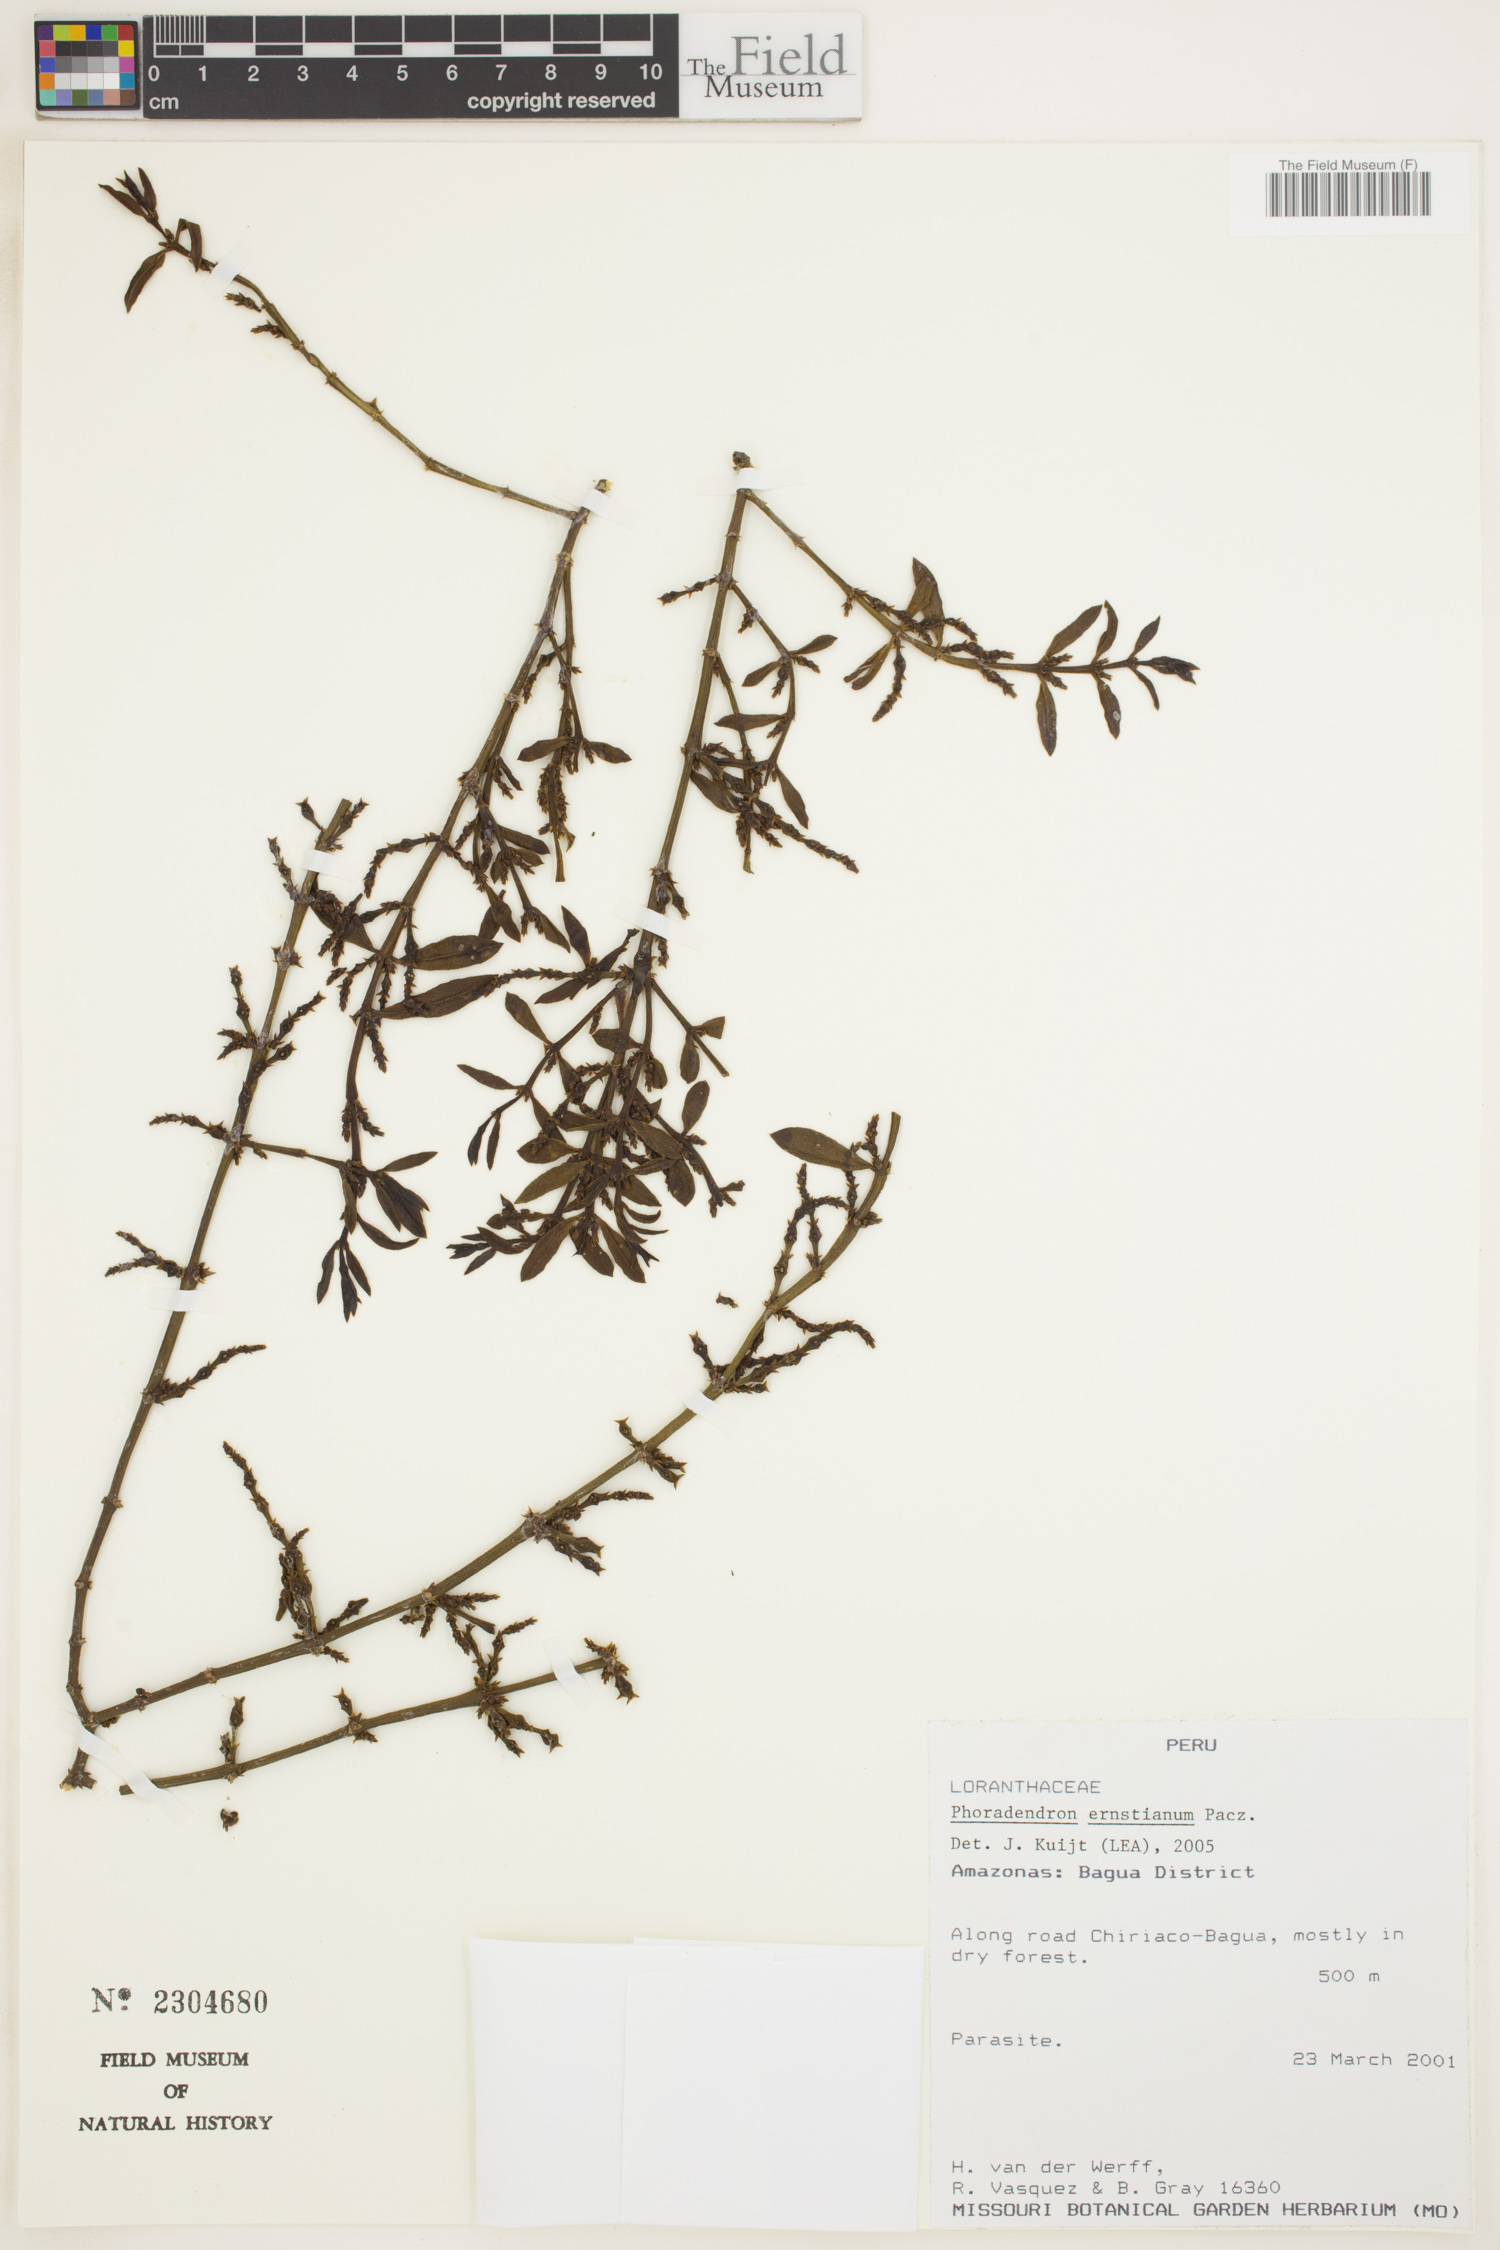 Phoradendron ernstianum image